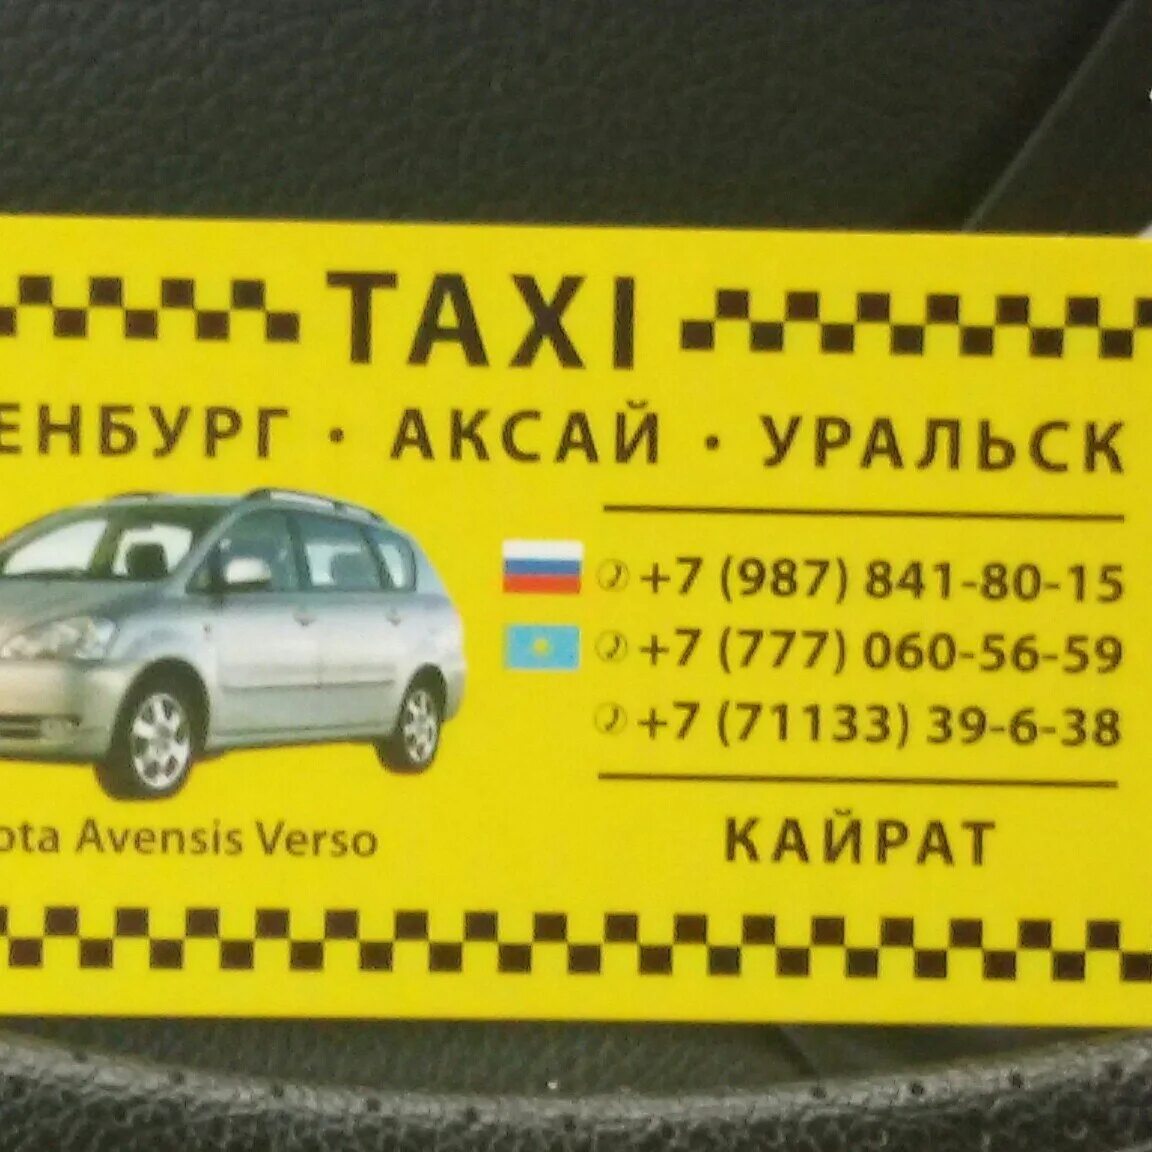 Такси оренбурга телефоны дешевые. Оренбург Аксай такси. Такси Оренбург Аксай Казахстан. Такси Аксай номера телефонов. Билет на такси.